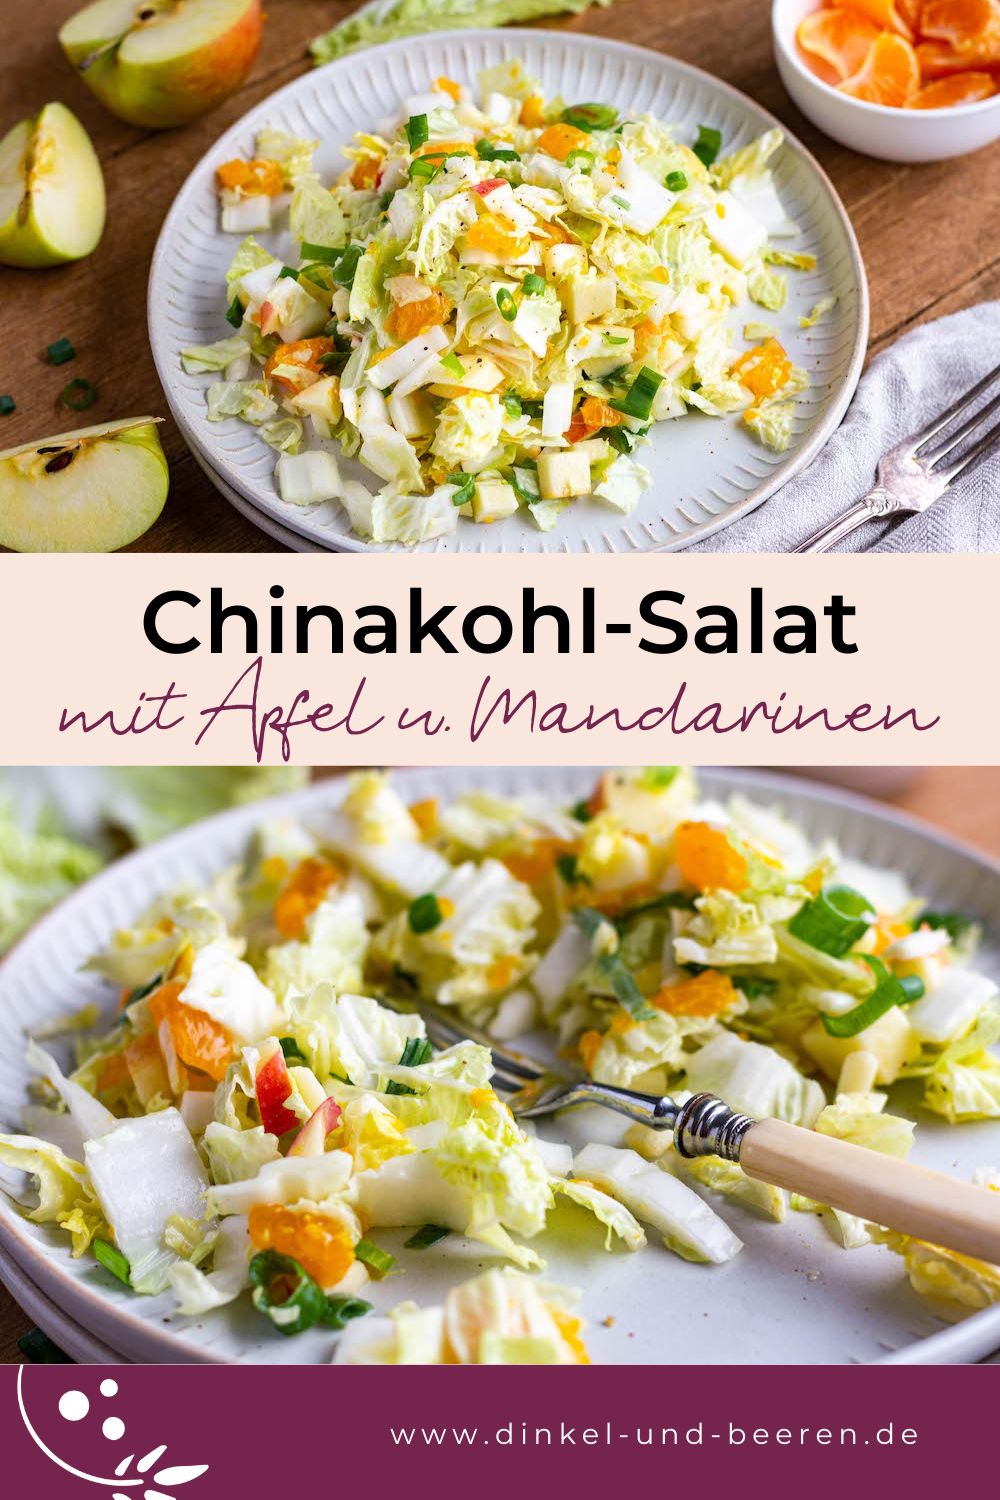 Pinterest-Grafik mit zwei Fotos des Chinakohl-Salat, dazu der Schriftzug "Chinakohl-Salat mit Apfel und Mandarinen".